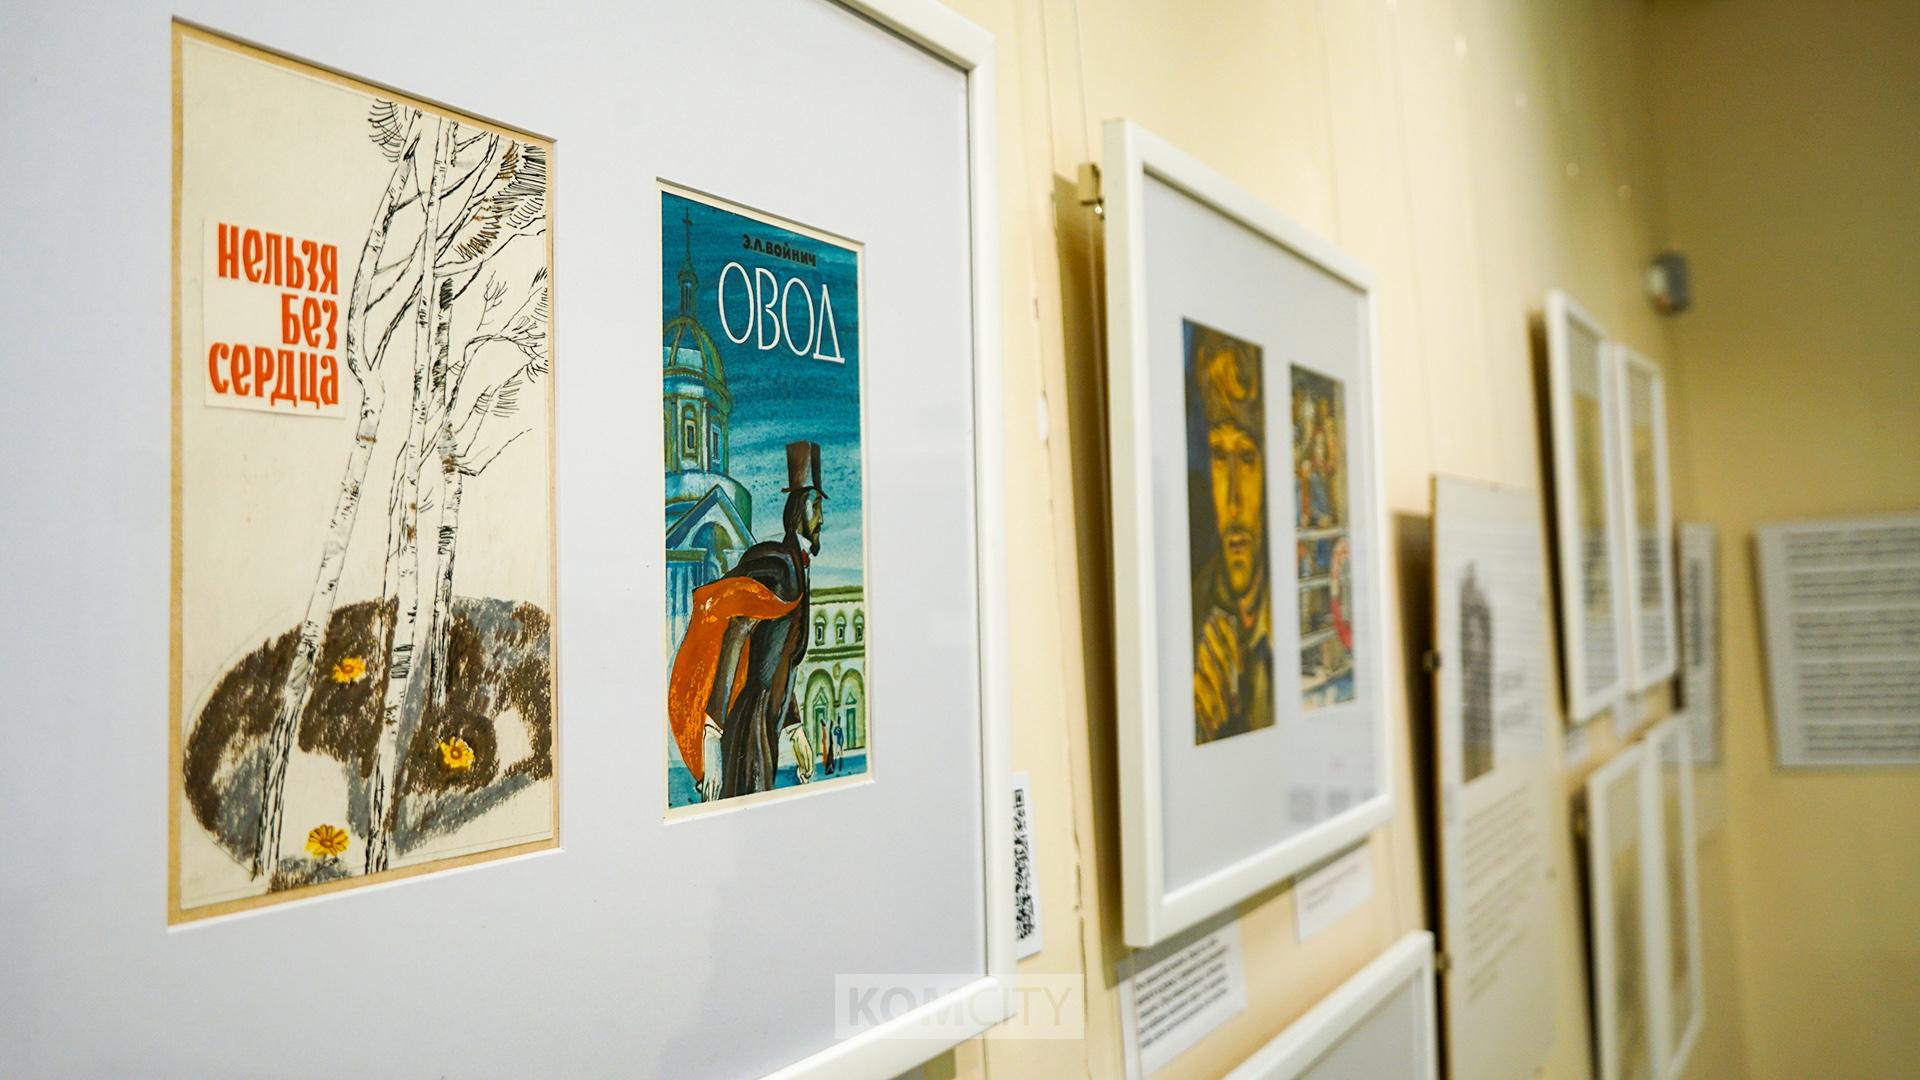 «Нарисованное слово» — на выставке книжных иллюстраций можно послушать сказки и увидеть оживающие картинки